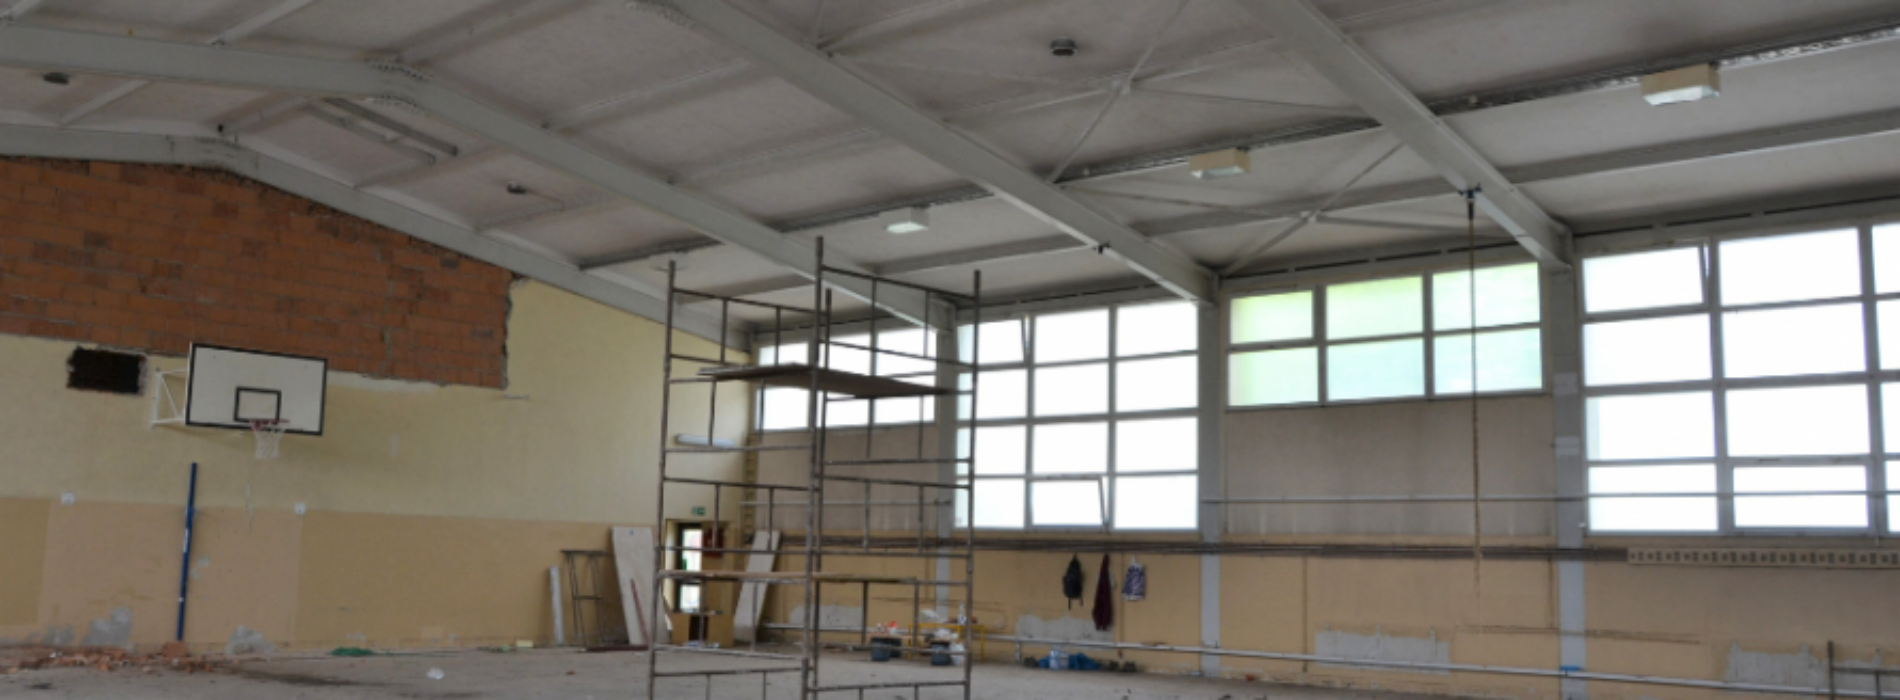 Sprawdziliśmy jak przebiegają postępy prac remontowych sali gimnastycznej